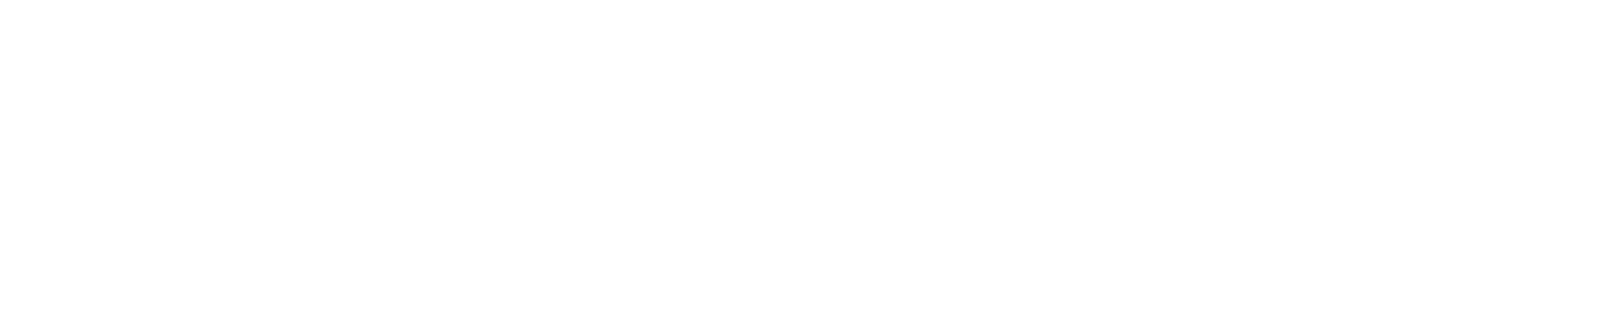 Magnachip logo grand pour les fonds sombres (PNG transparent)